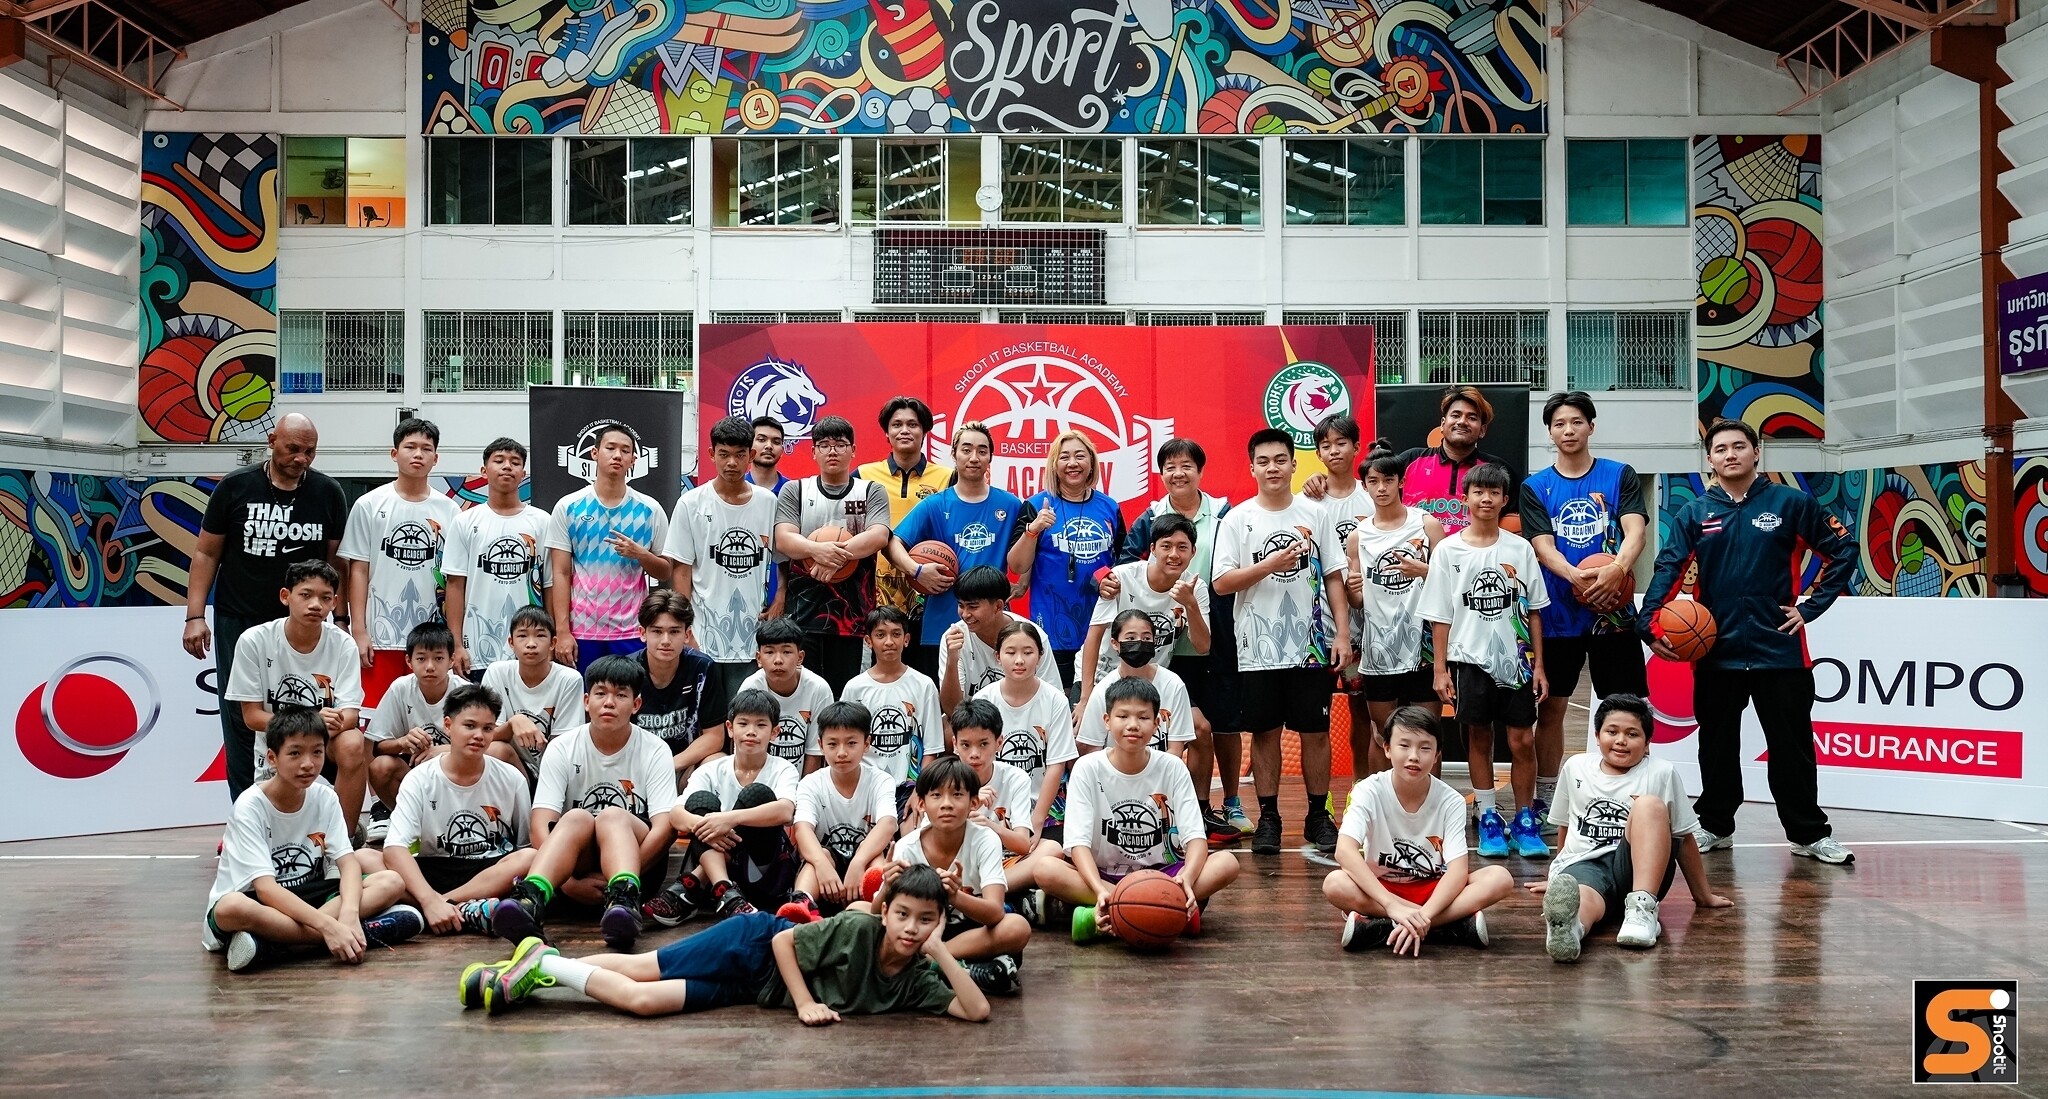 ซมโปะ ประกันภัย สนับสนุนกรมธรรม์คุ้มครองอุบัติเหตุ แก่นักกีฬาบาสเกตบอลทีมชู๊ตอิทอาคาเดมี ในการแข่งขัน SIA Youth Basketball Camp Road to Malaysia ณ ประเทศมาเลเซีย